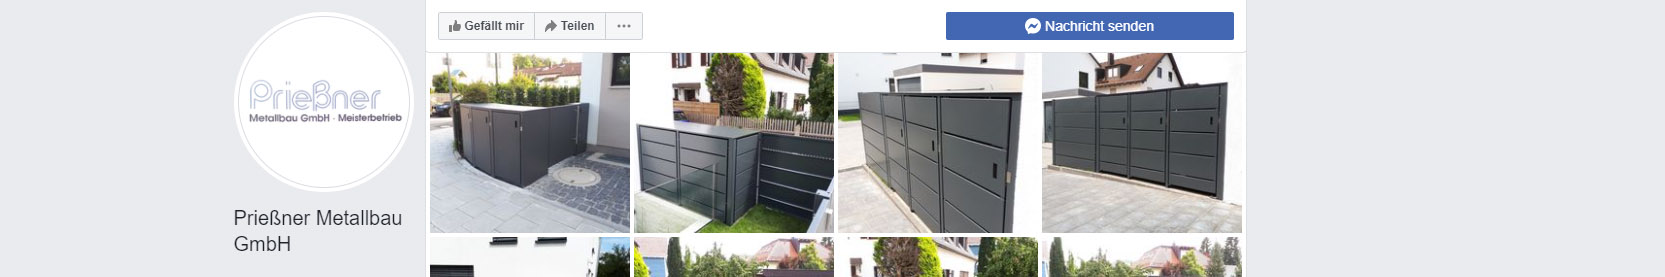 Prießner Metallbau Facebook Page Screenshot